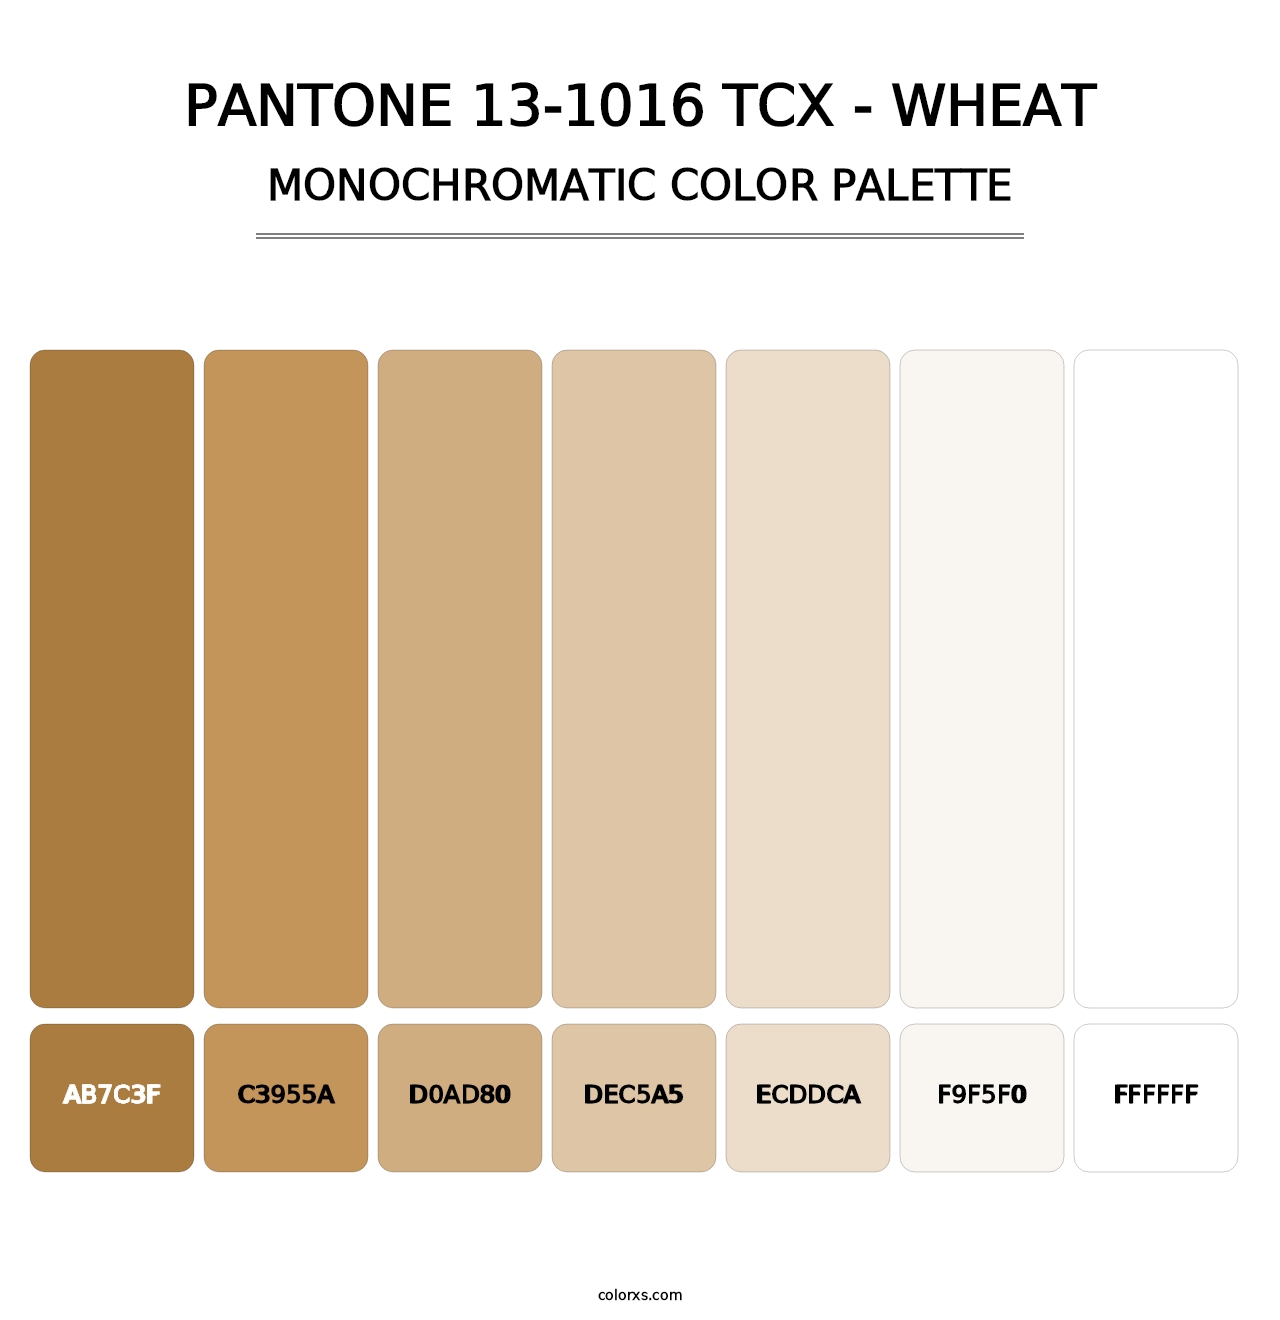 PANTONE 13-1016 TCX - Wheat - Monochromatic Color Palette